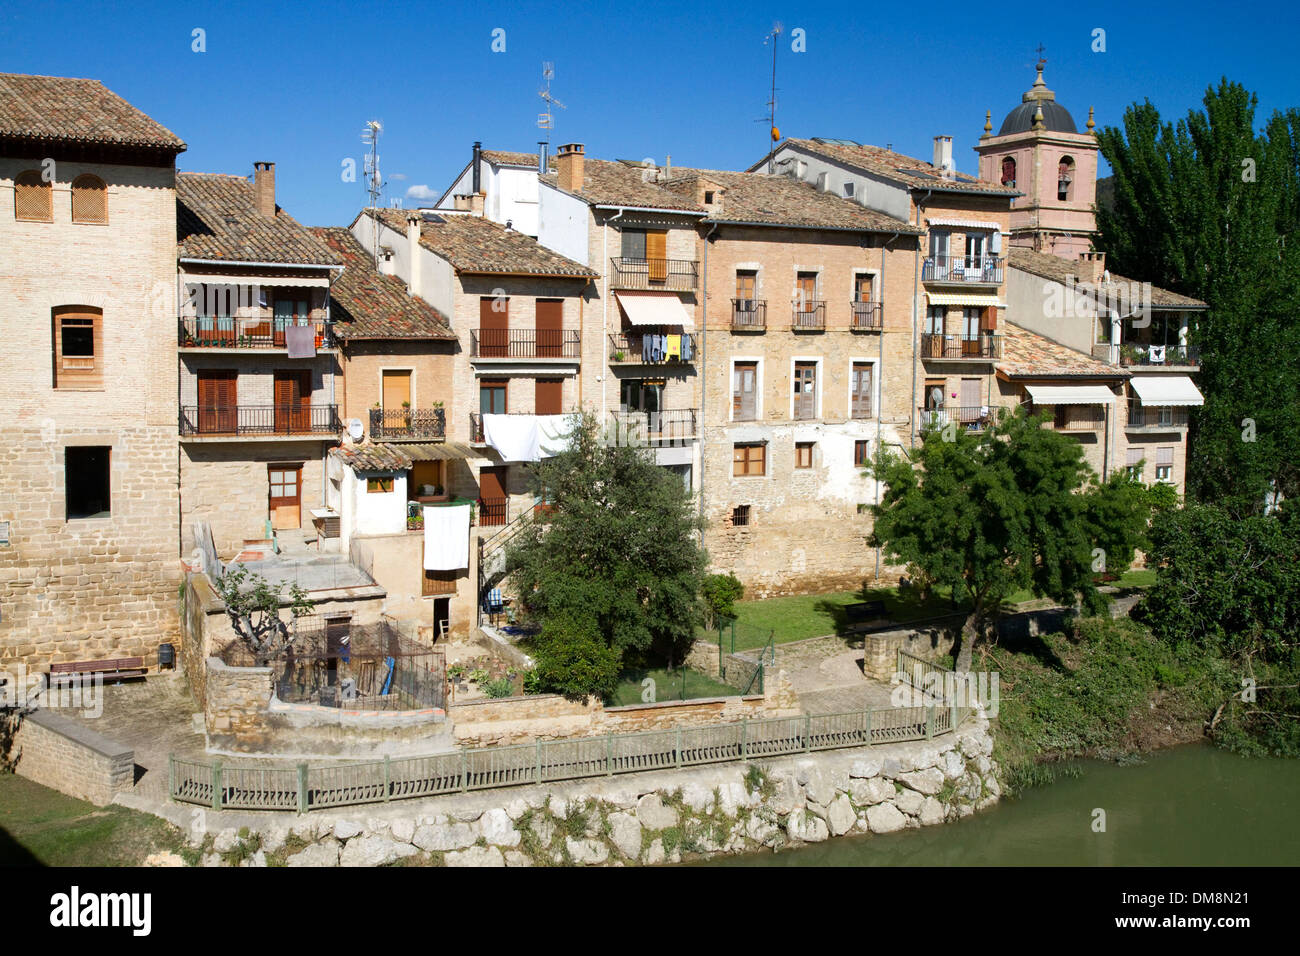 Puente La Reina ist eine baskische Stadt entlang dem Jakobsweg Pilgerweg, Navarra, Spanien. Stockfoto